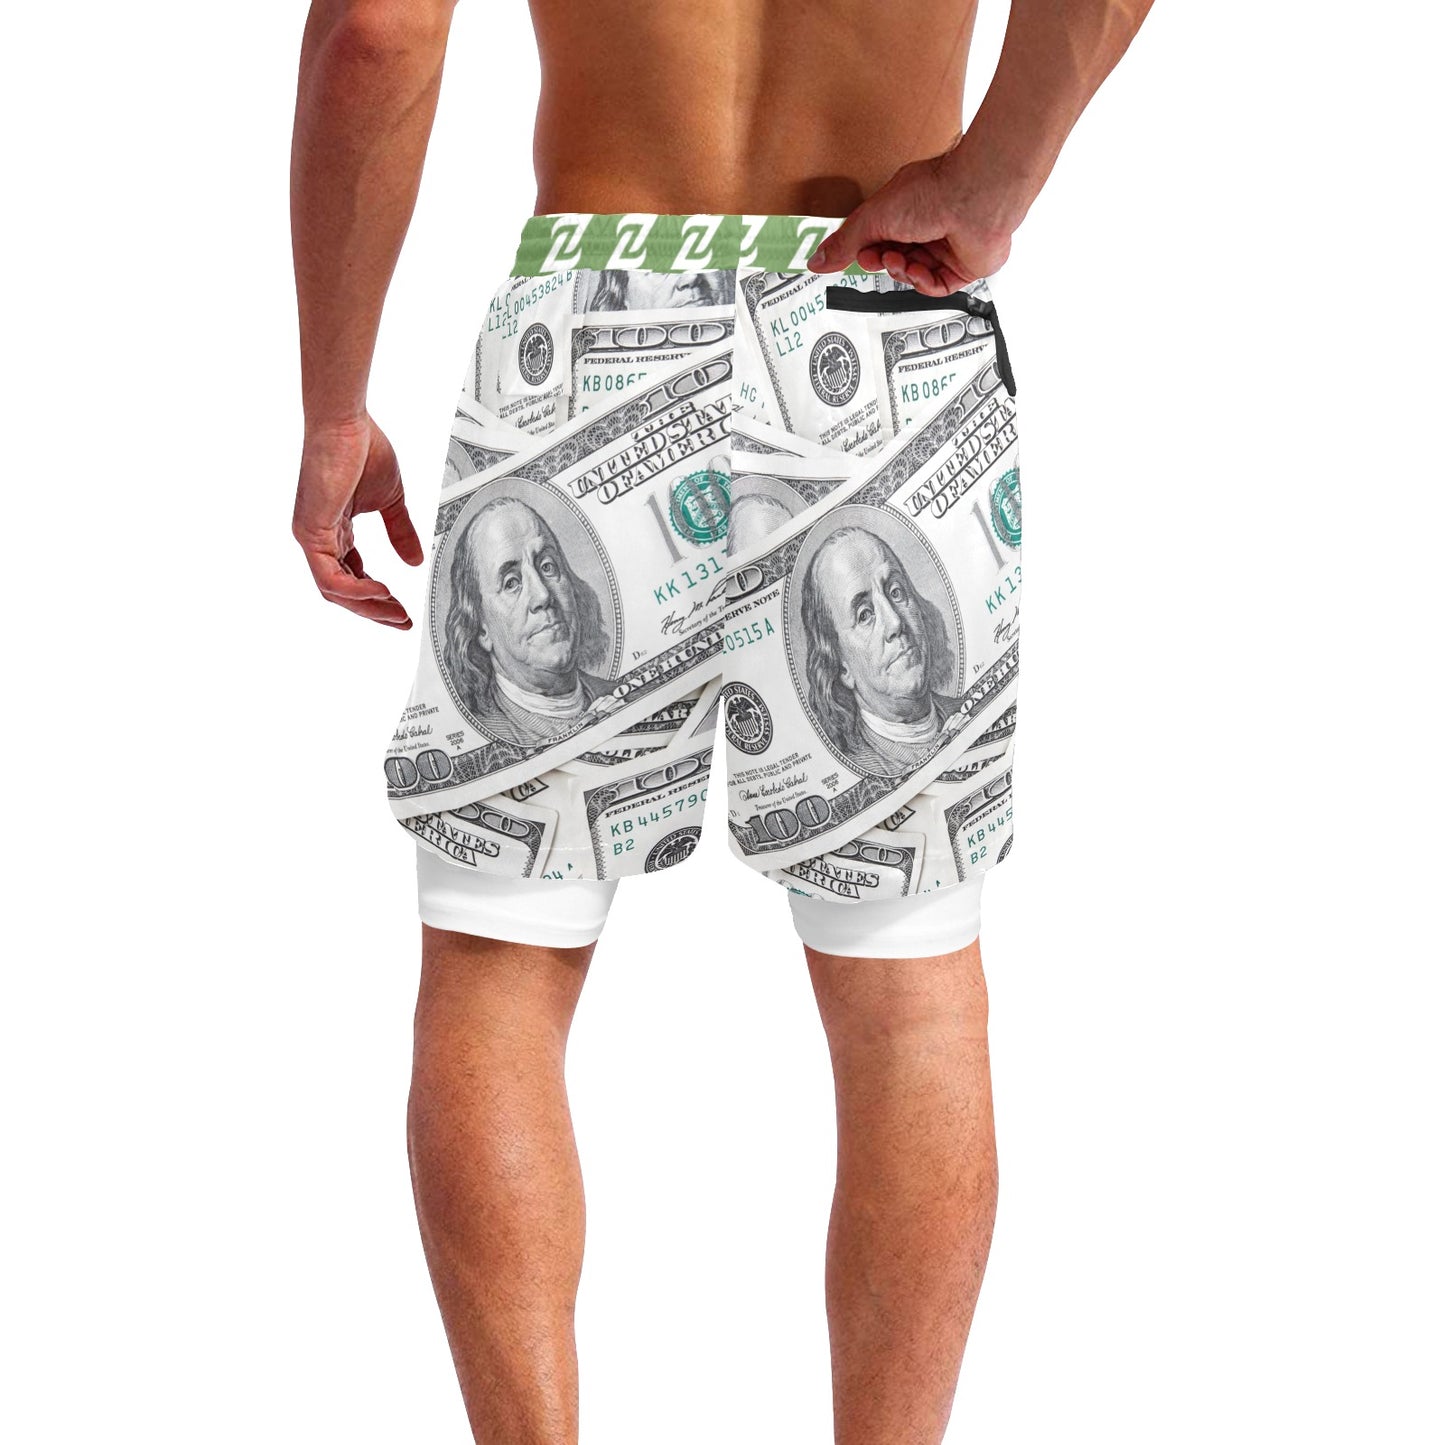 Zen Shorts with Liner - Money